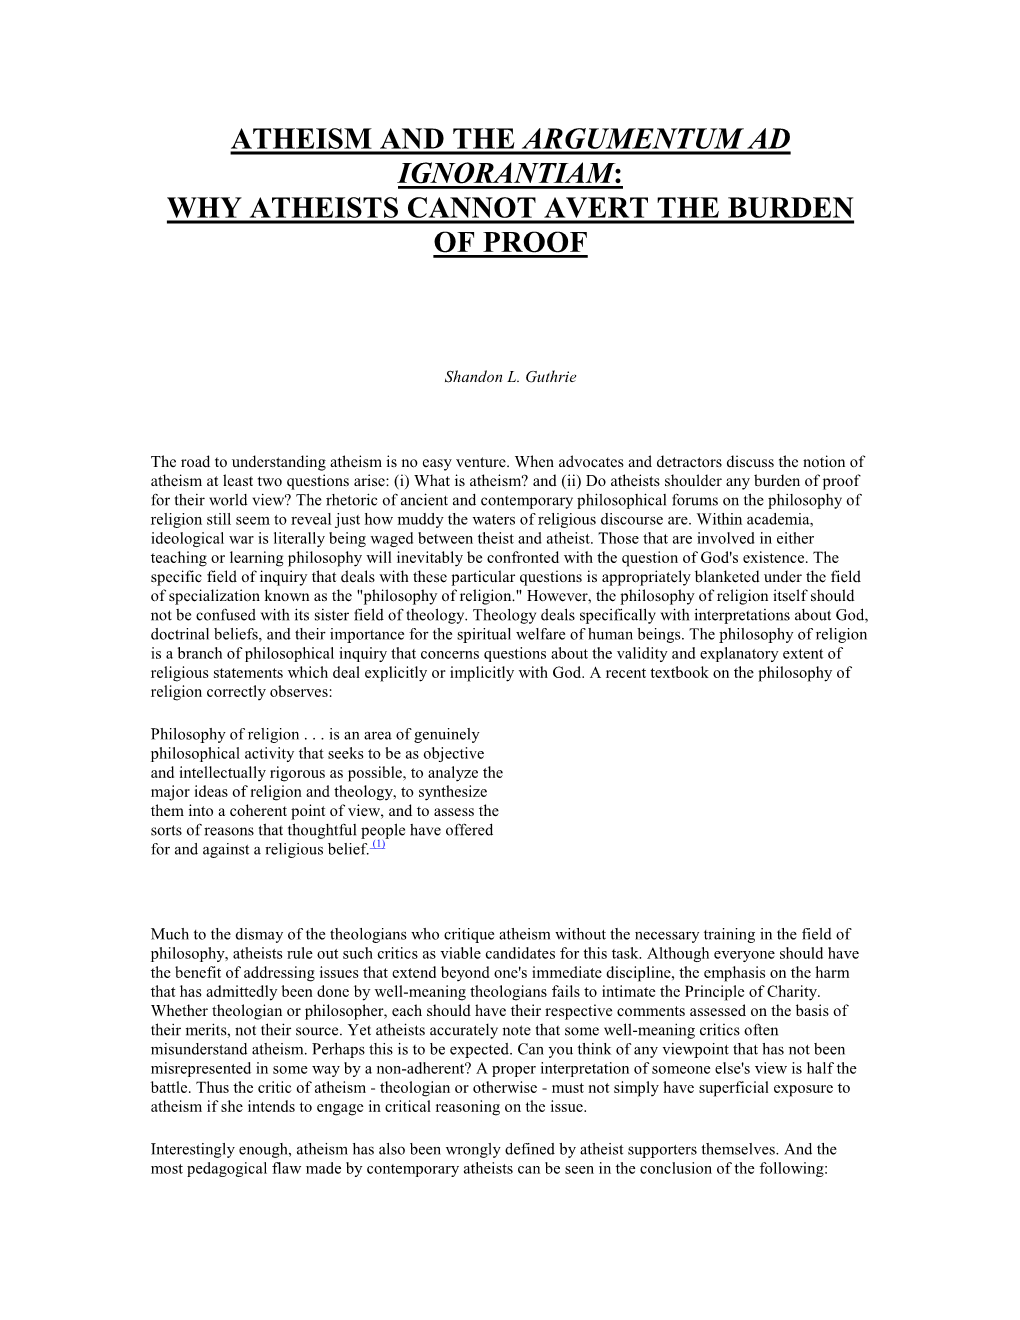 Atheism and the Argumentum Ad Ignorantiam: Why